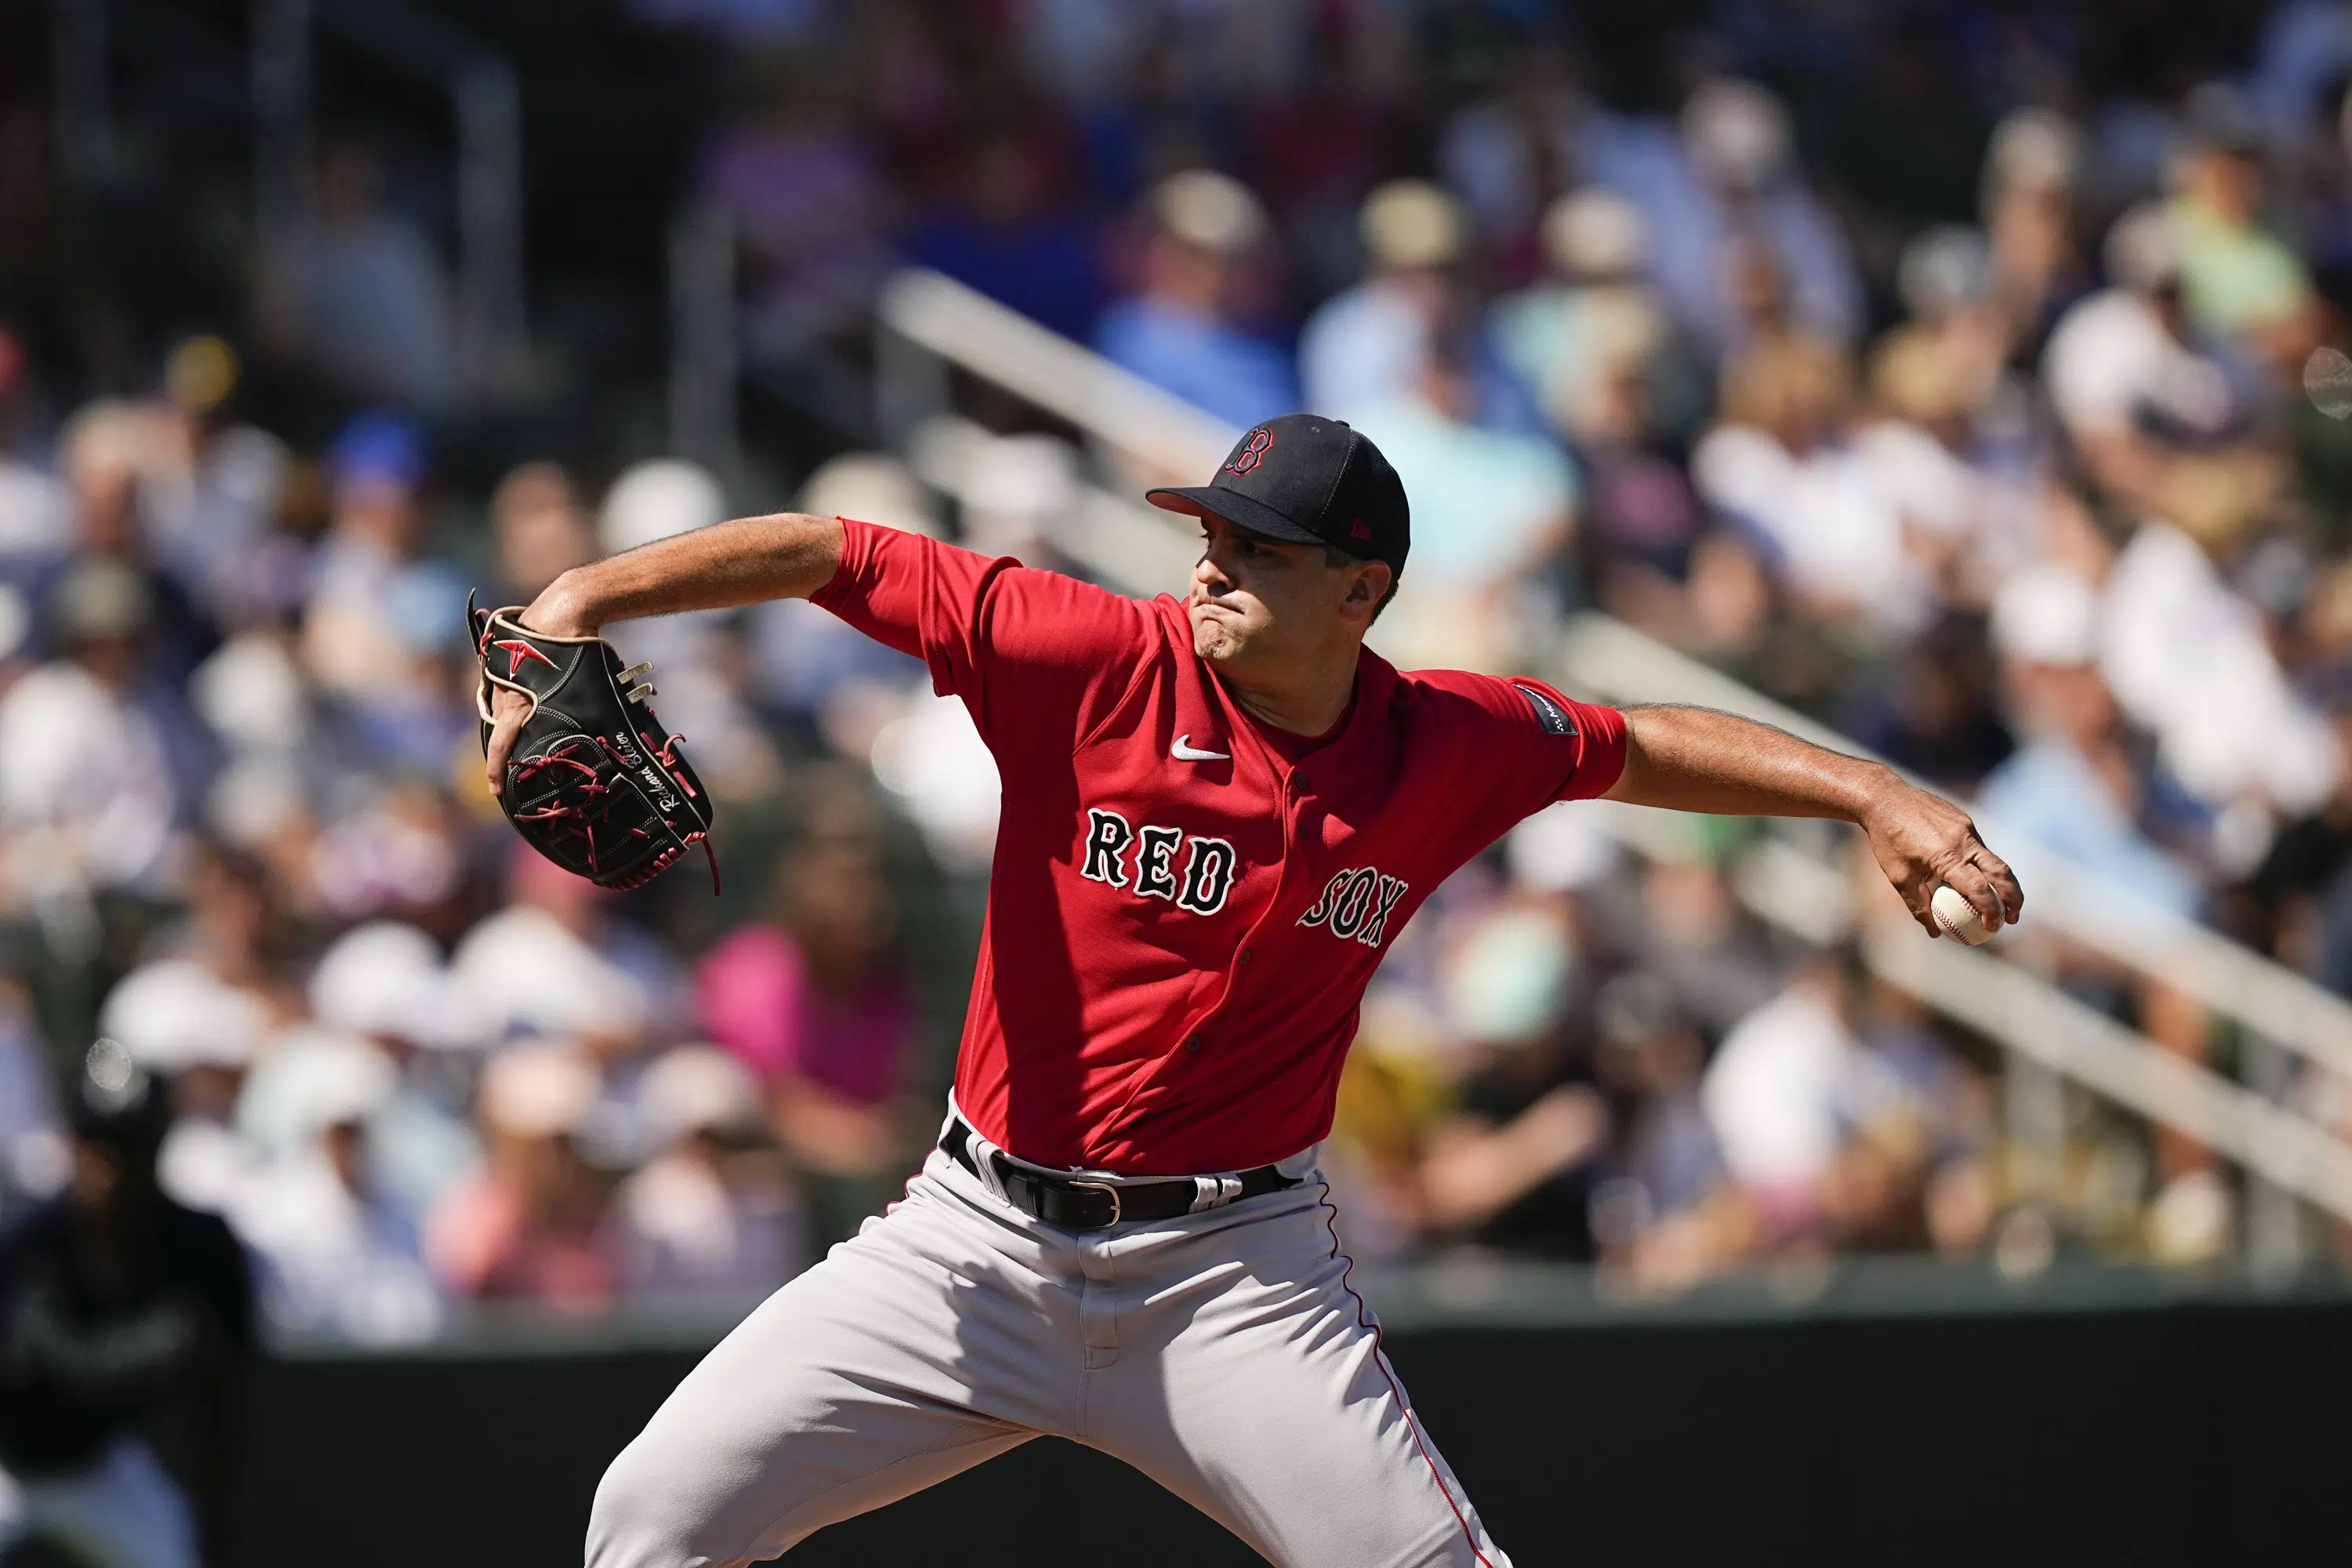 La violazione del pitch clock di Conley lascia Braves-Red Sox in parità